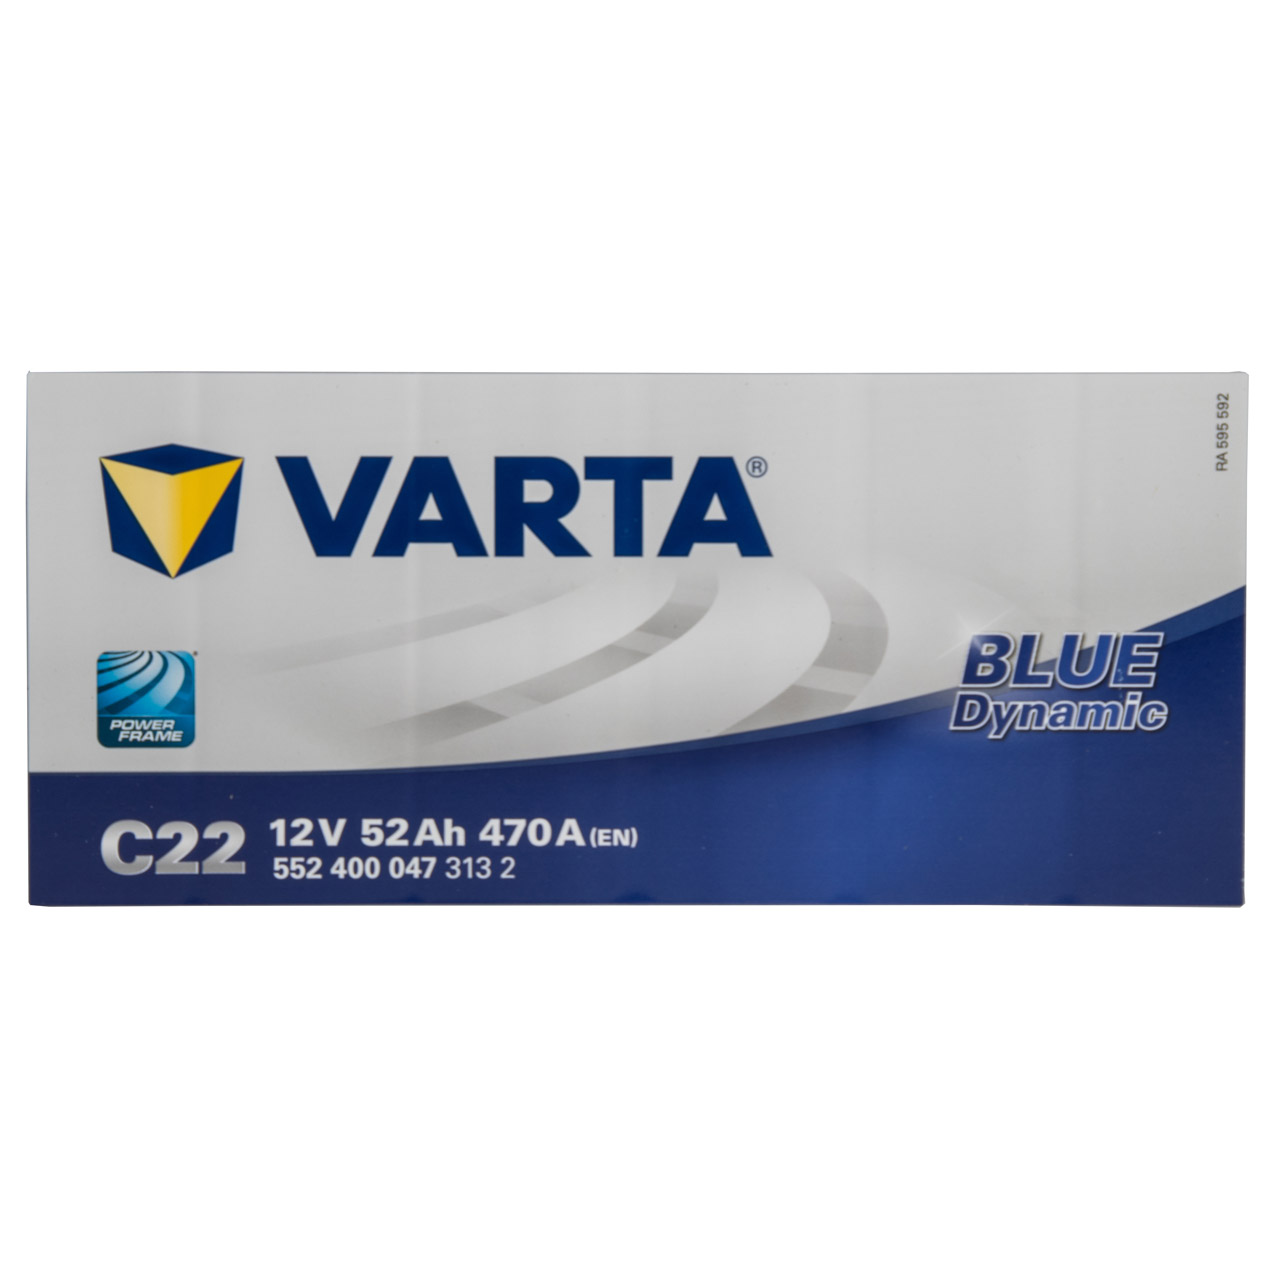 VARTA C22 Blue Dynamic 12V 52Ah - VARTA Blue Dynamic - Shop